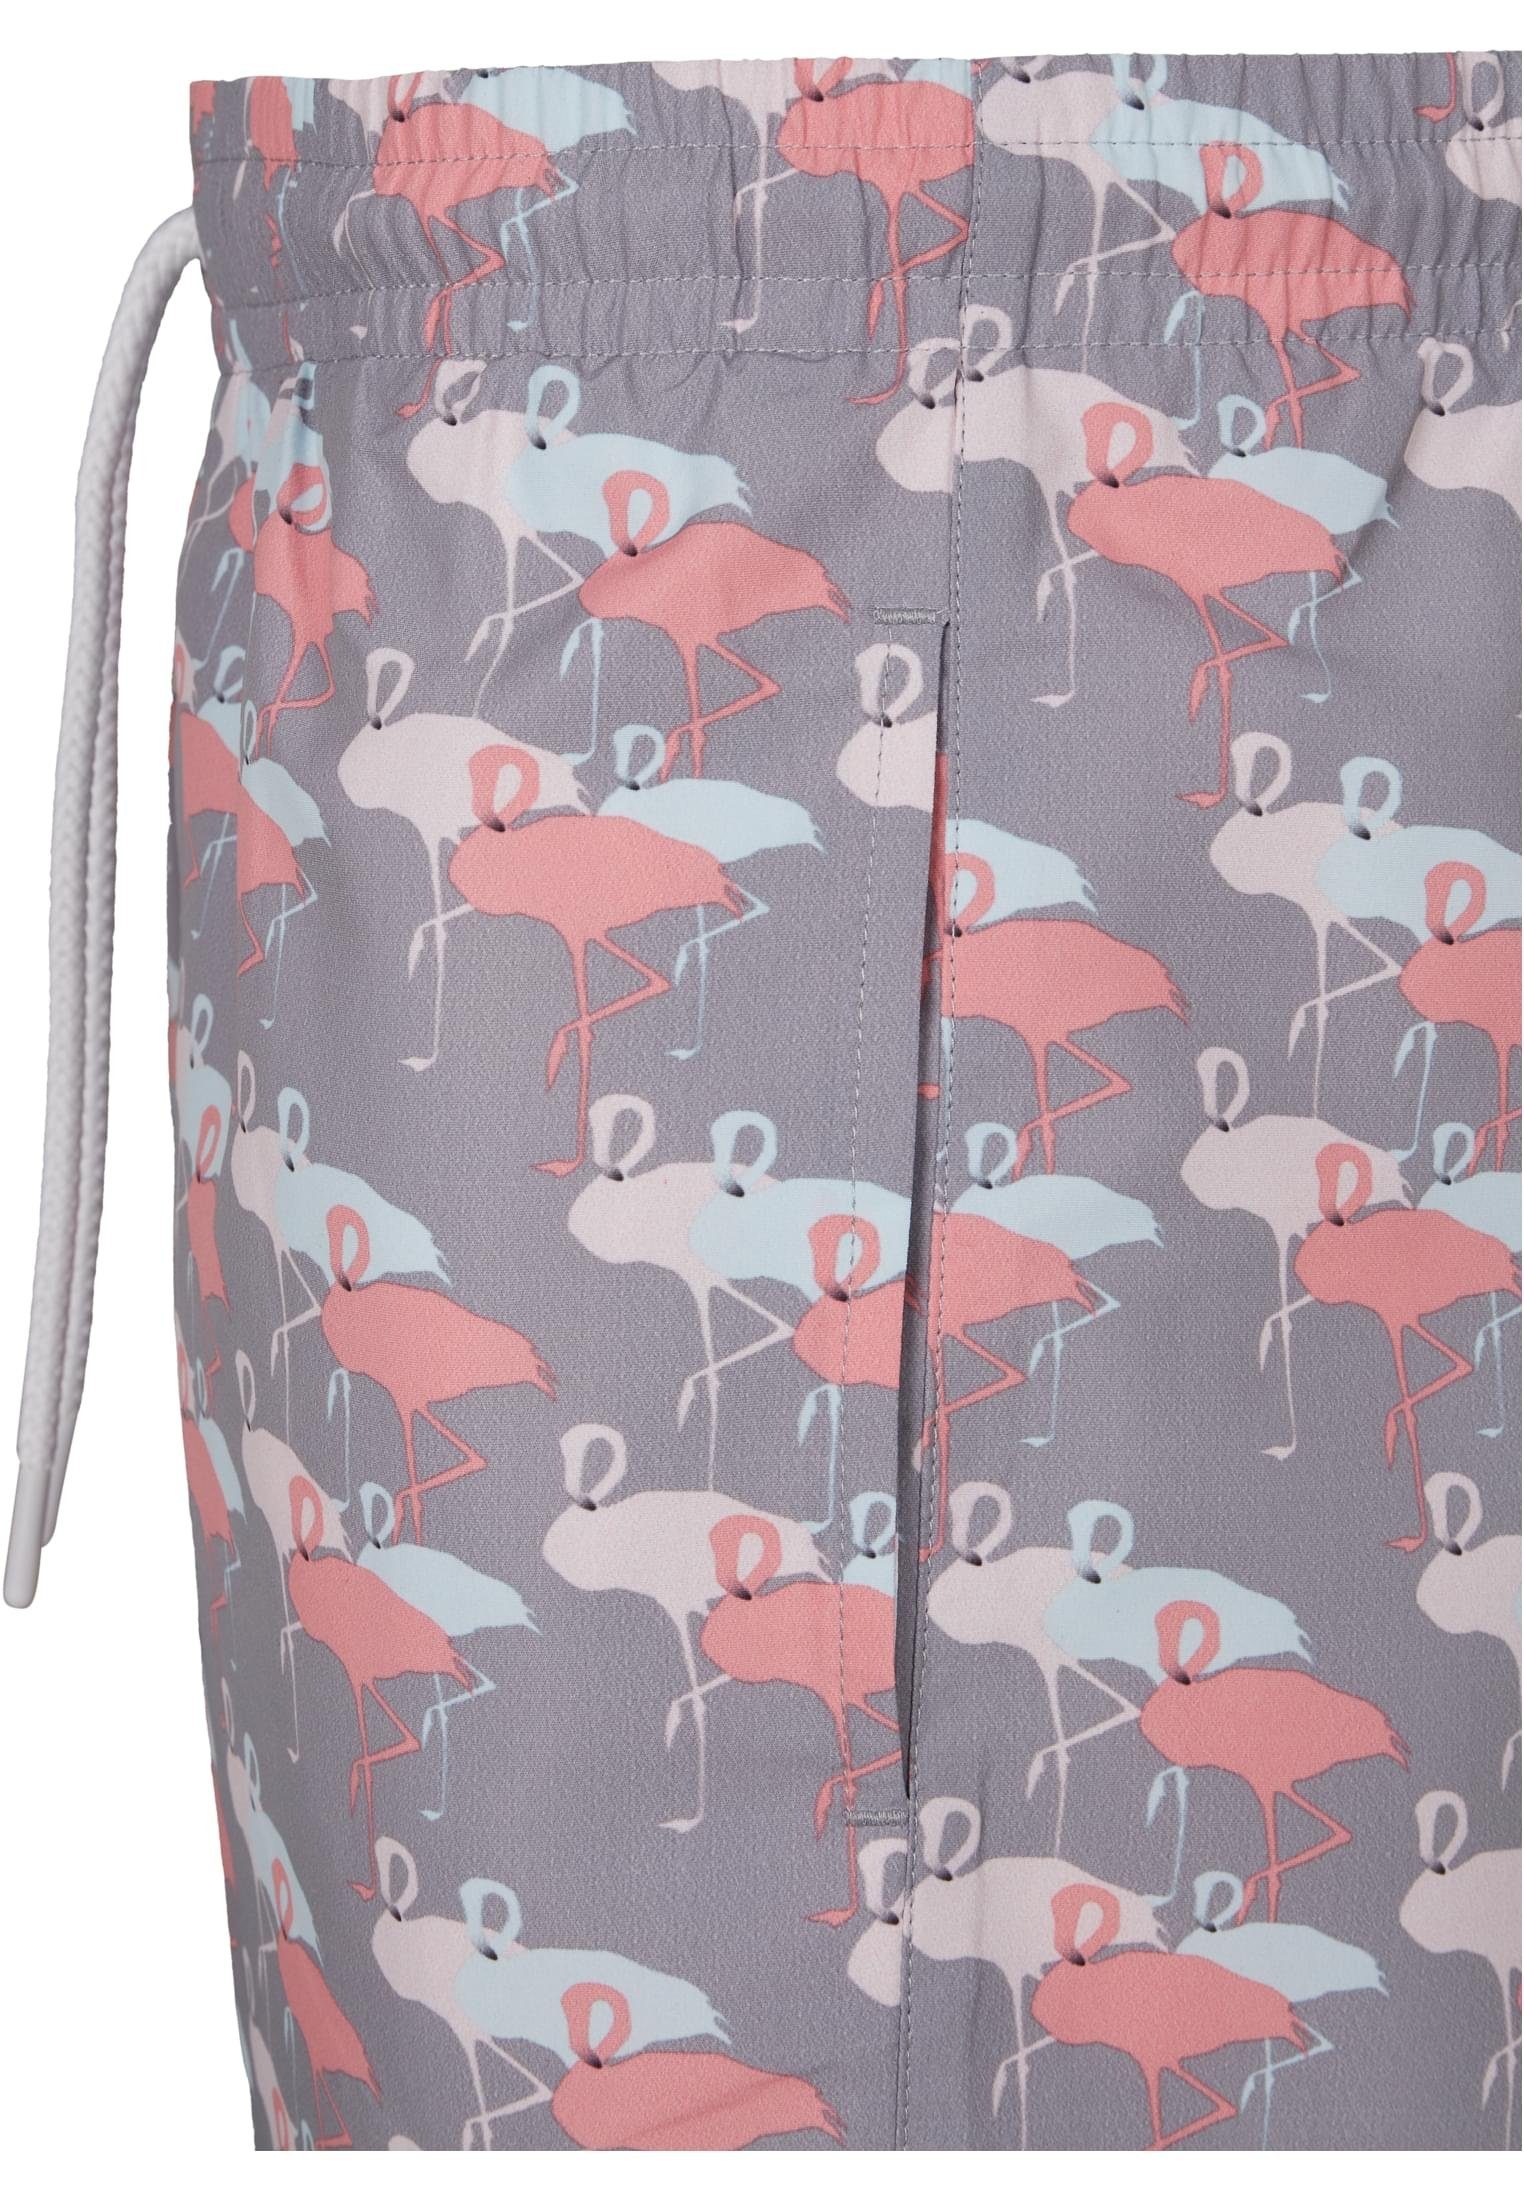 URBAN flamingo aop CLASSICS Swim Badeshorts Herren Pattern Shorts